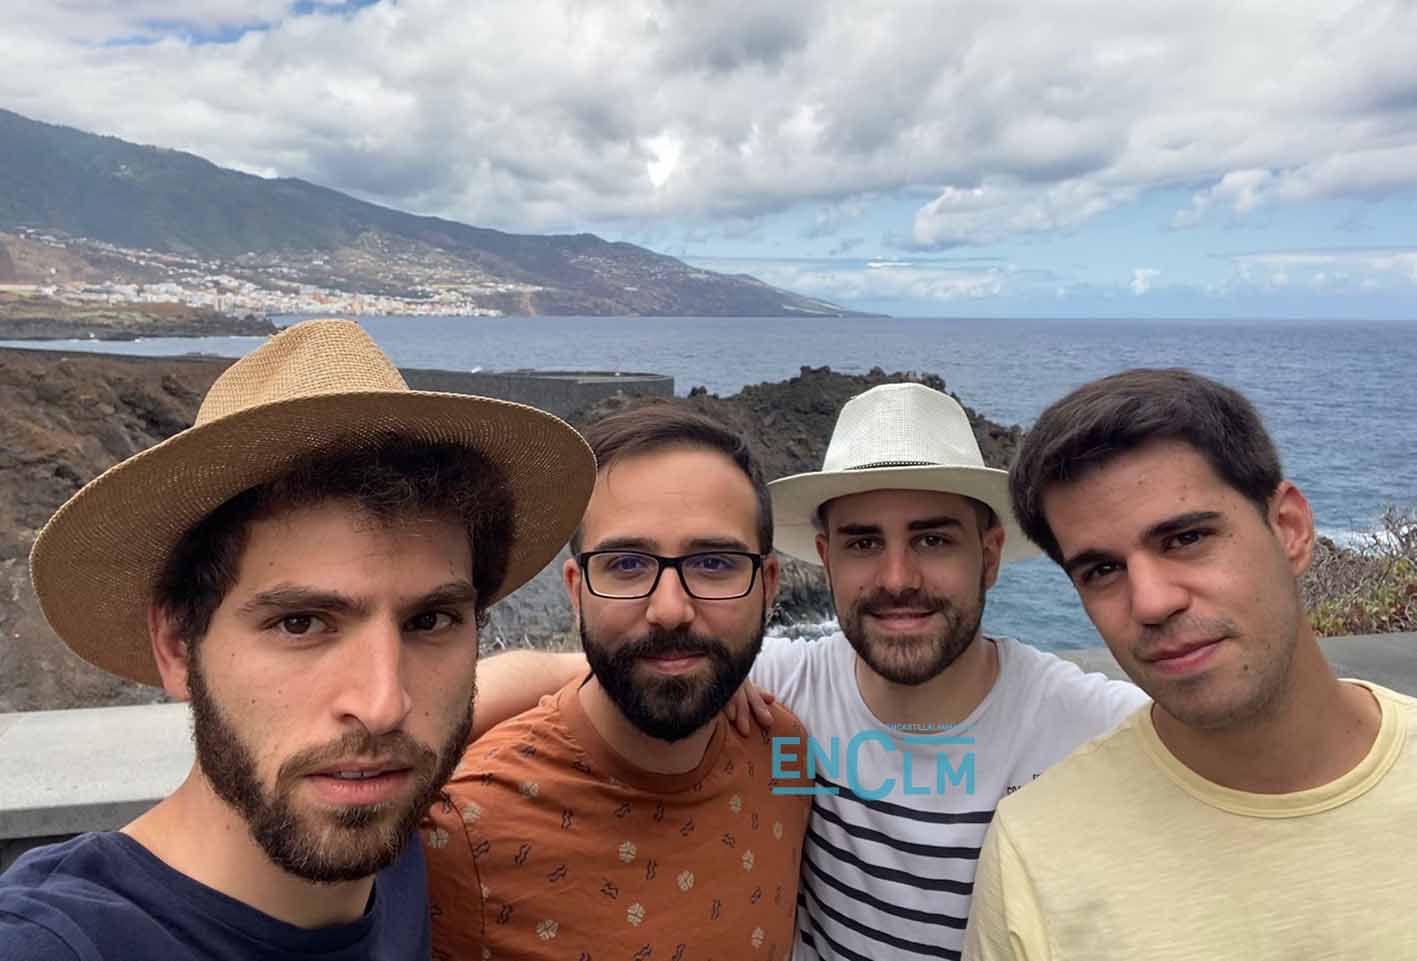 De izquierda a derecha, Ignacio, Álvaro, Roberto y Diego, los cuatro amigos toledanos que están en La Palma, en la boda de su amigo Rodrigo, también toledano, y que vivieron en directo la erupción del volcán Cumbre Vieja.